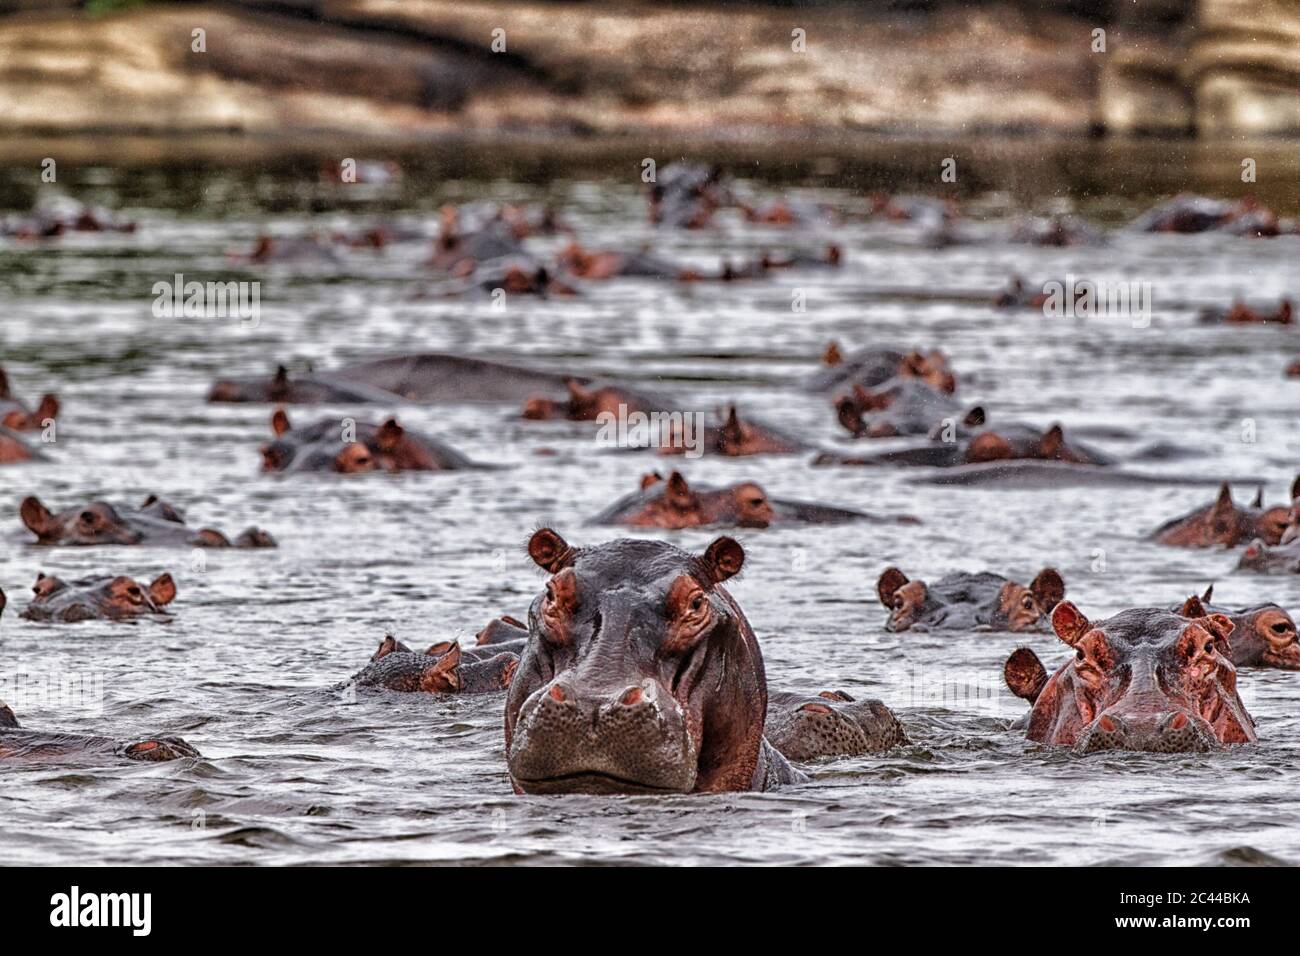 République démocratique du Congo, hippopotames (Hippopotamus amphibius) nageant dans la rivière Banque D'Images